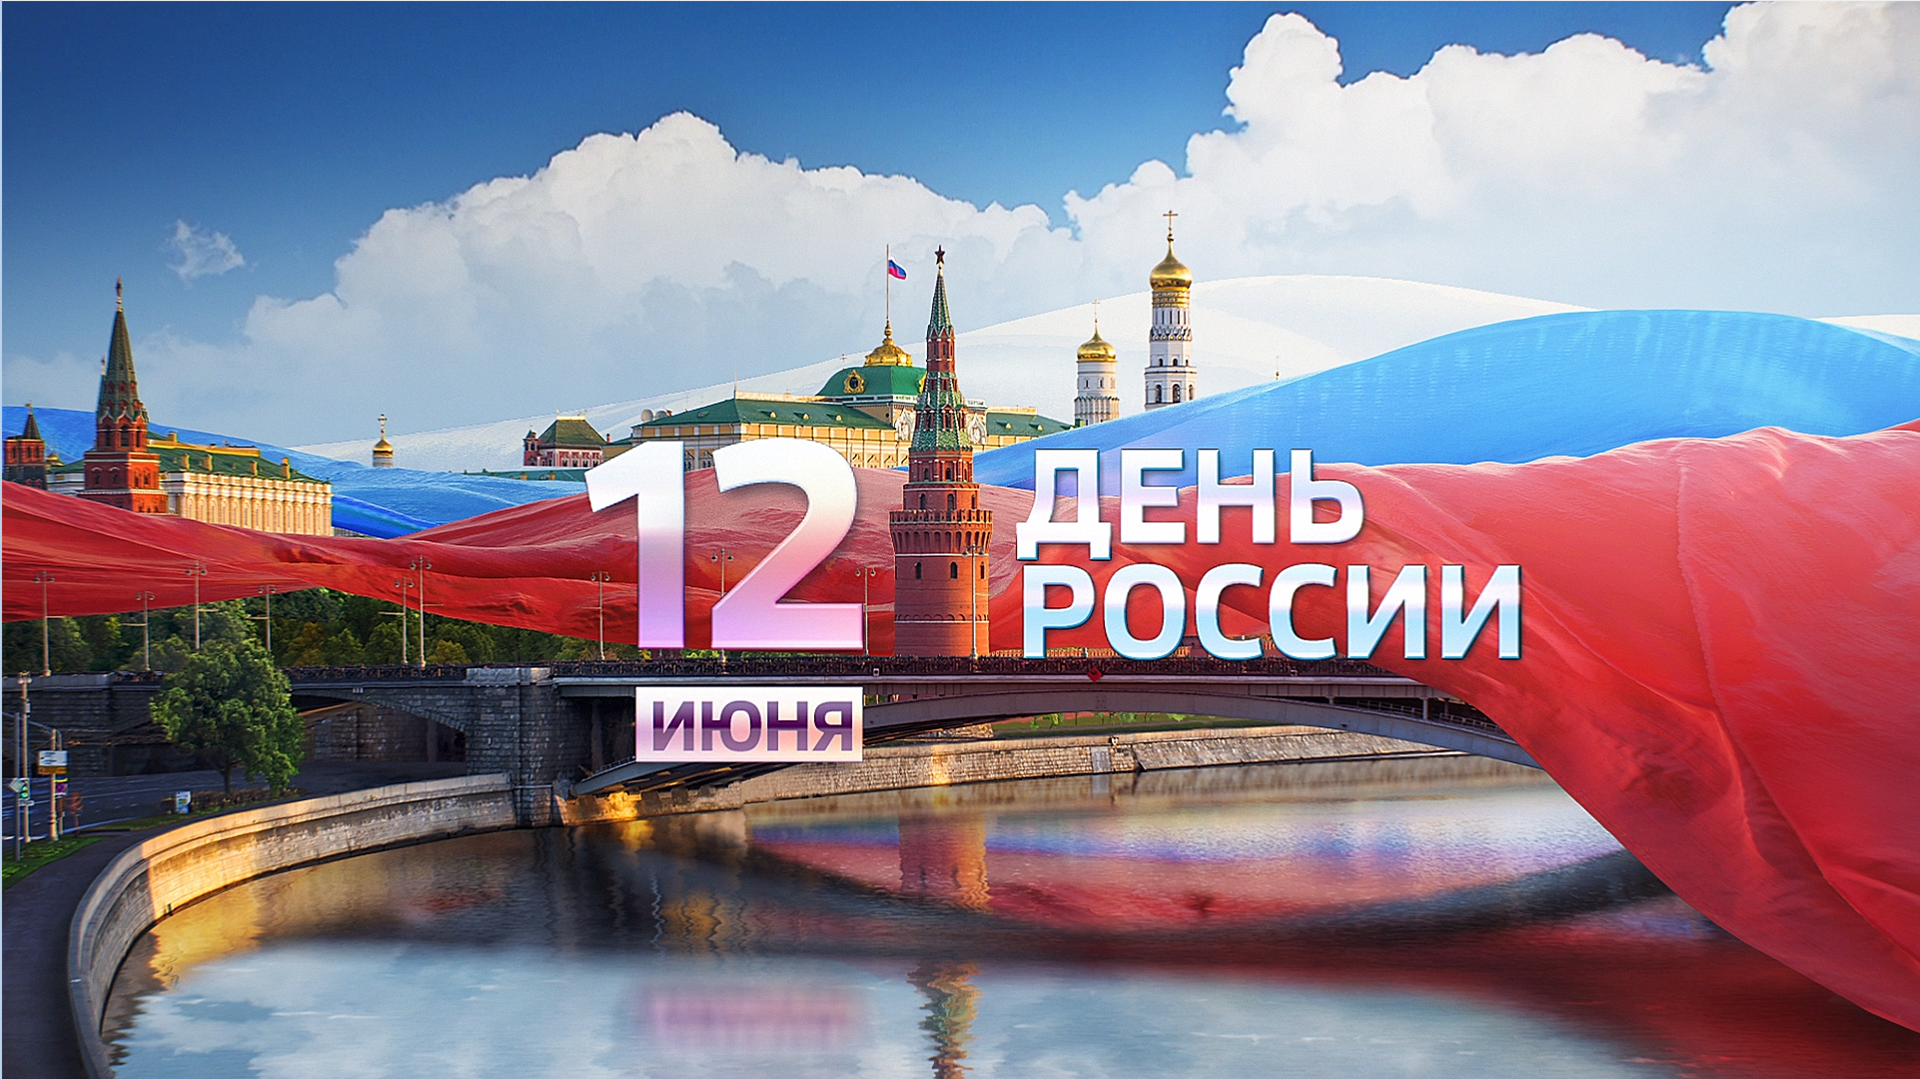 Russia Day Celebration 2020